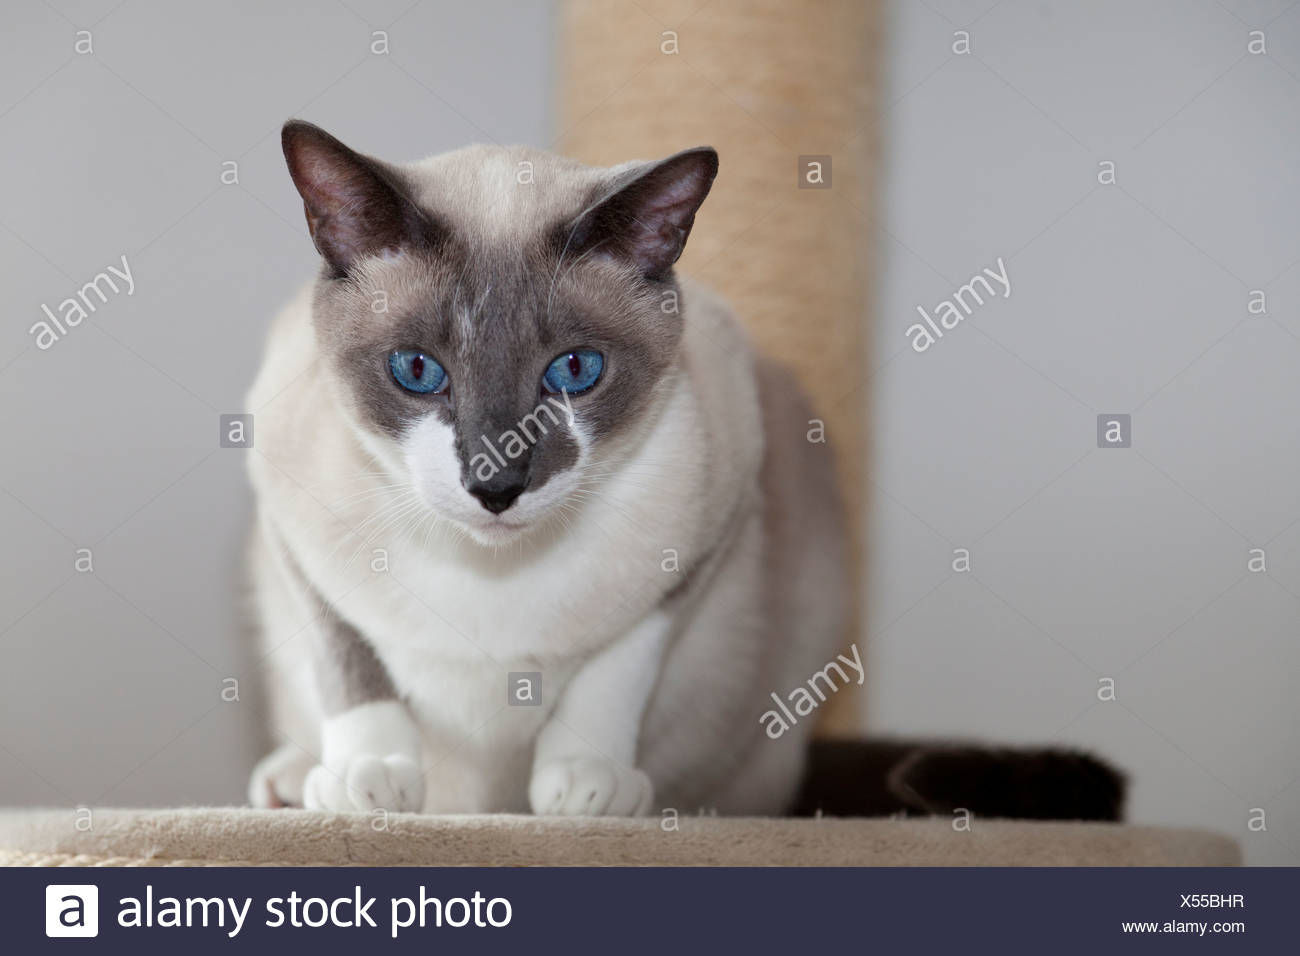 blue snowshoe cat